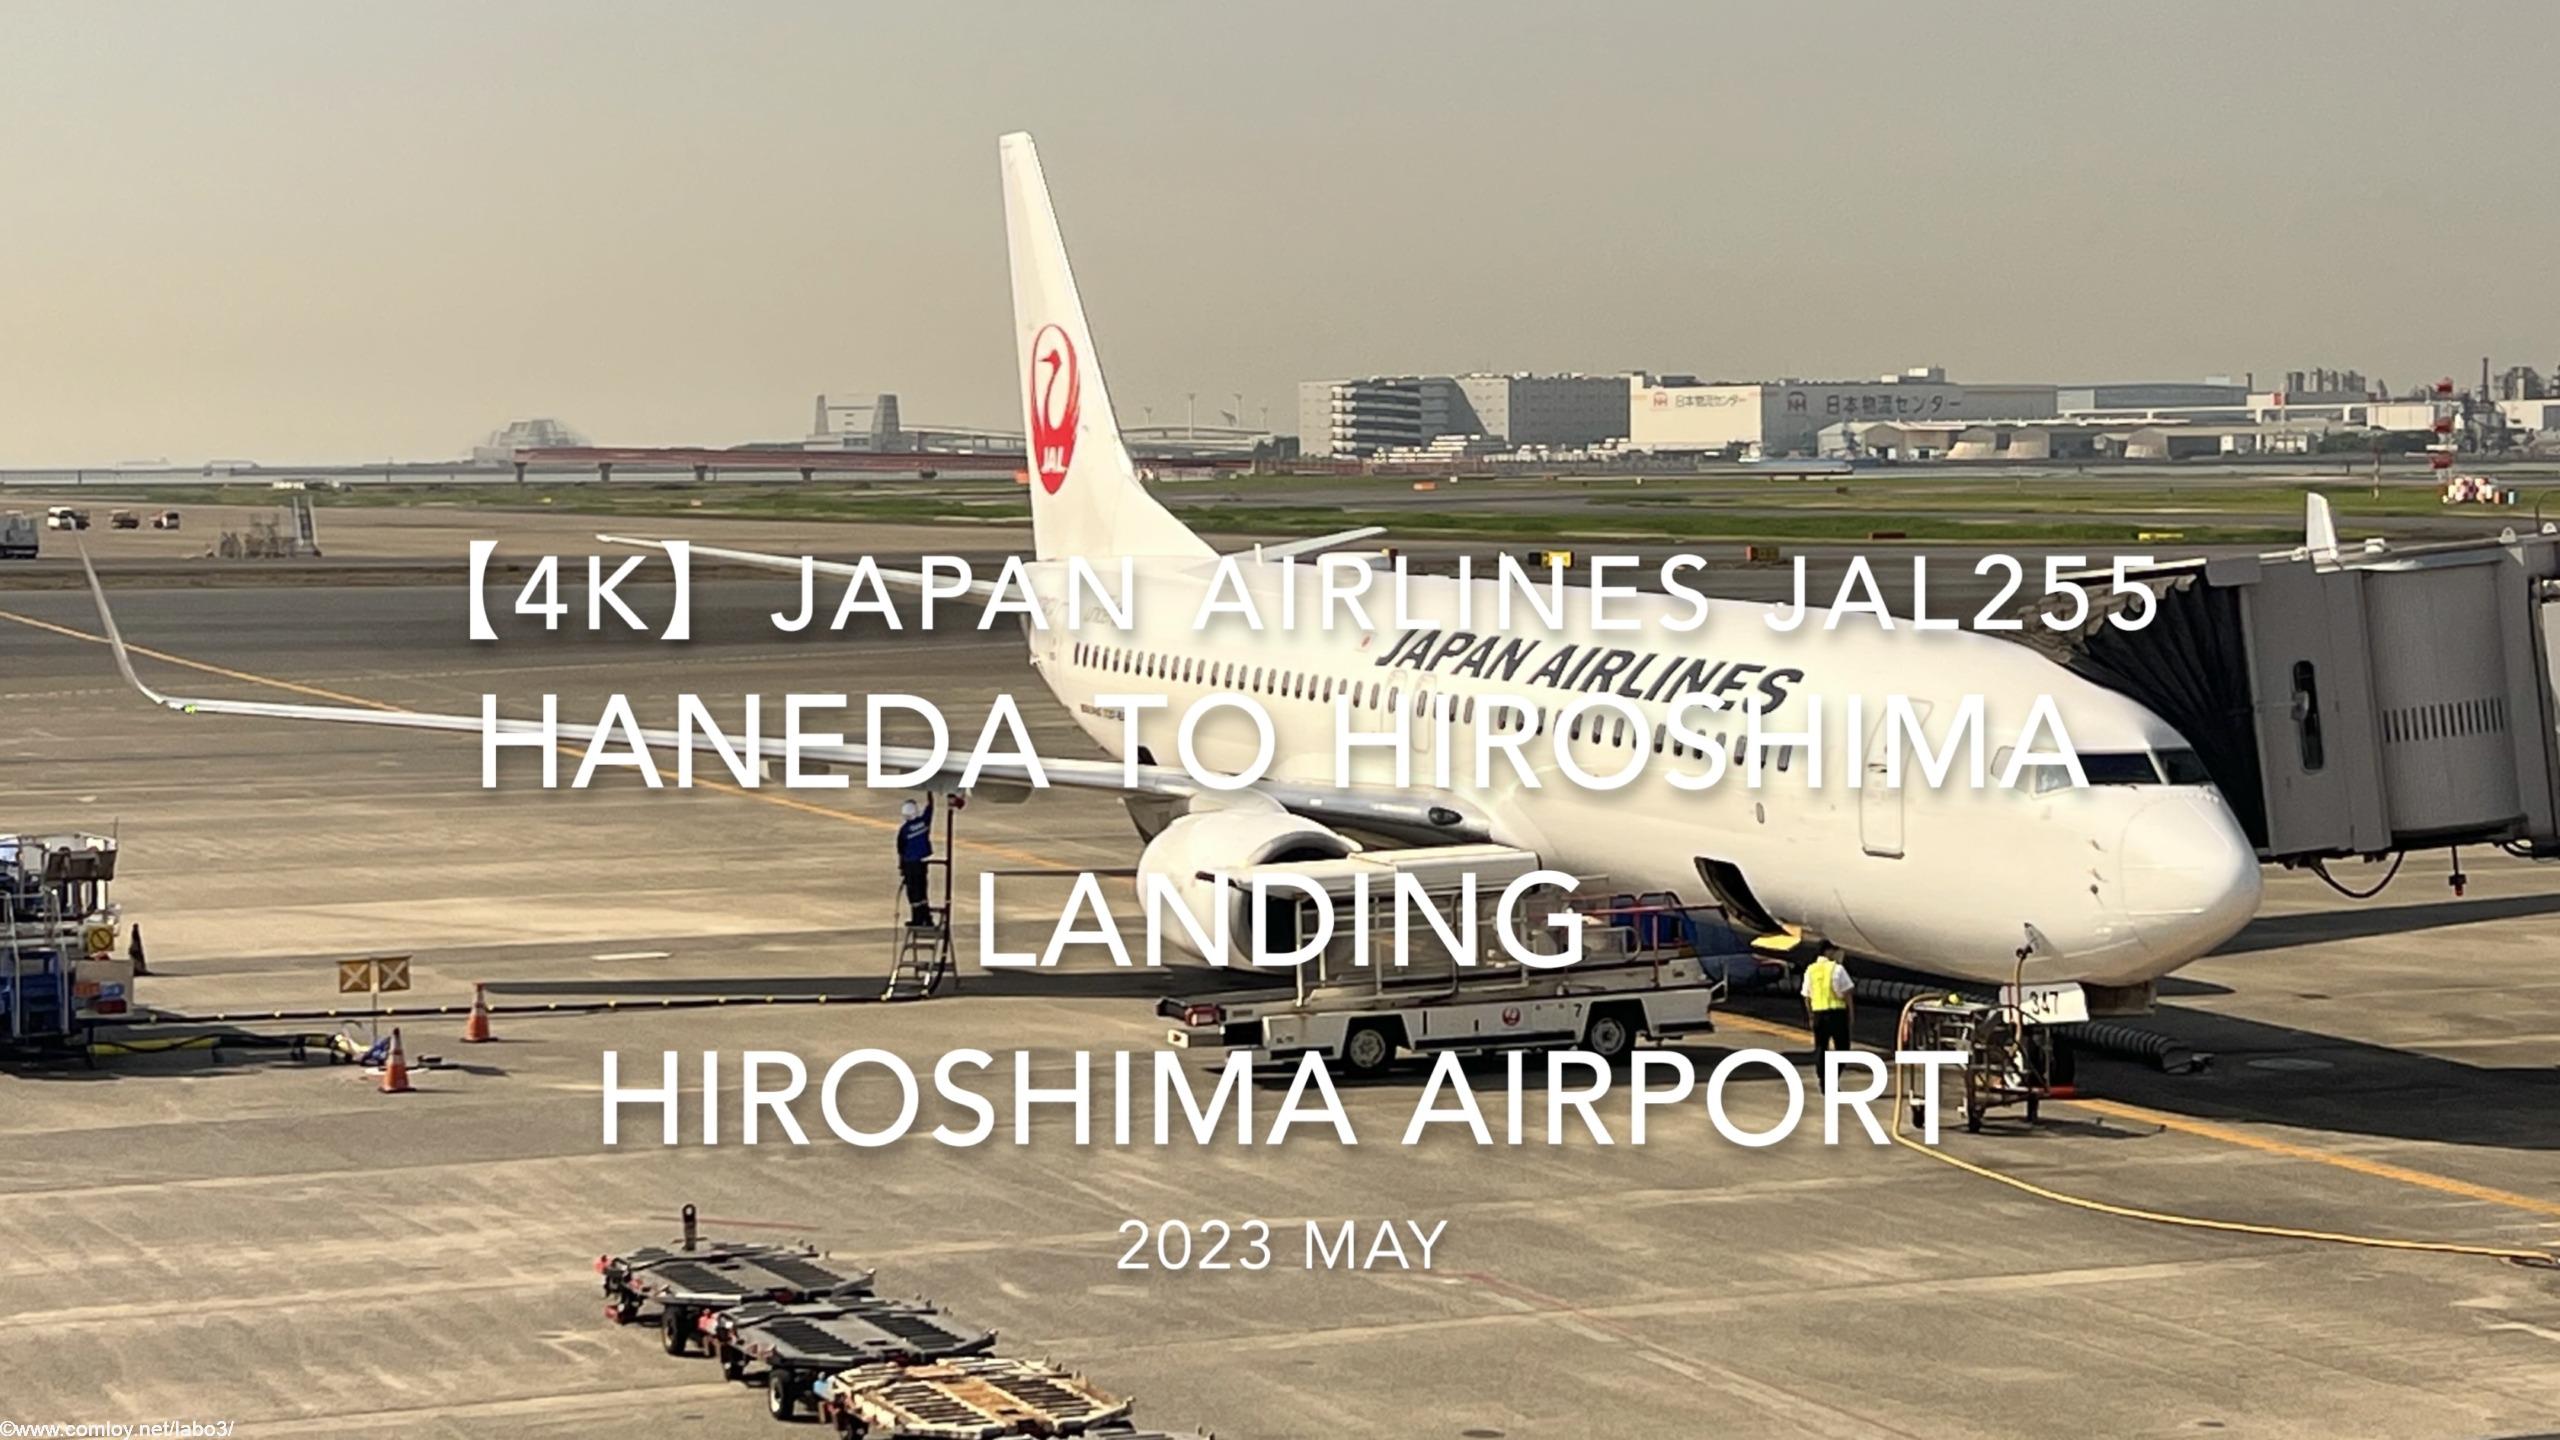 【機内から離着陸映像 4K】2023 MAY Japan Airlines JAL255 HANEDA to HIROSHIMA LANDING HIROSHIMA Airport